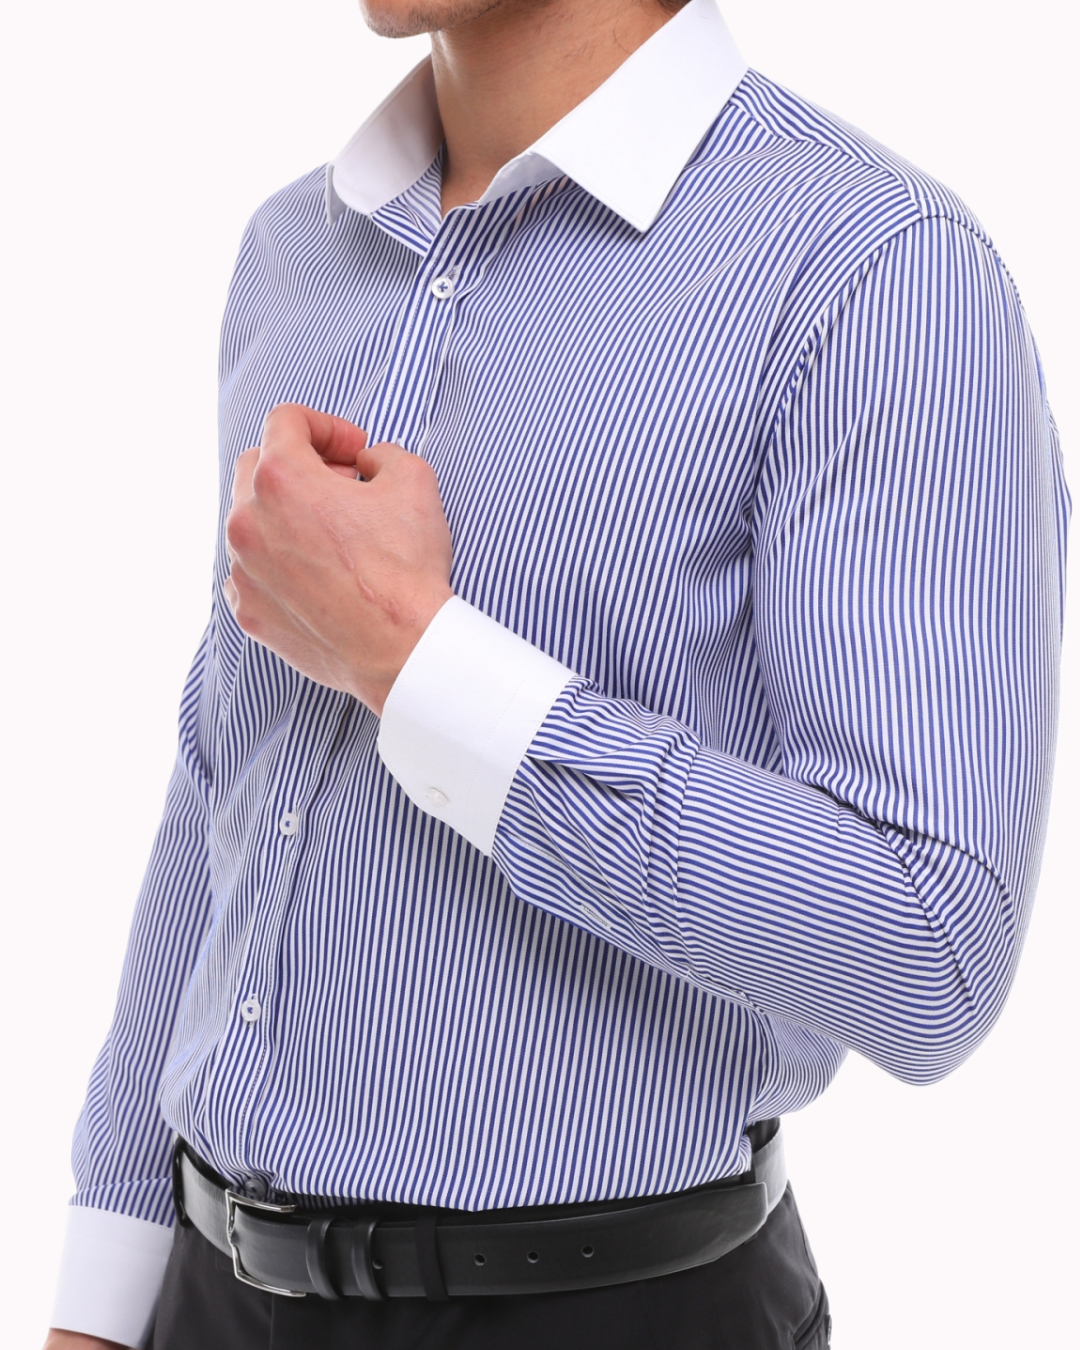 Blau-weiß gestreiftes Hemd mit gestre Kragen ecanyon Bügeln einfaches – weißem 